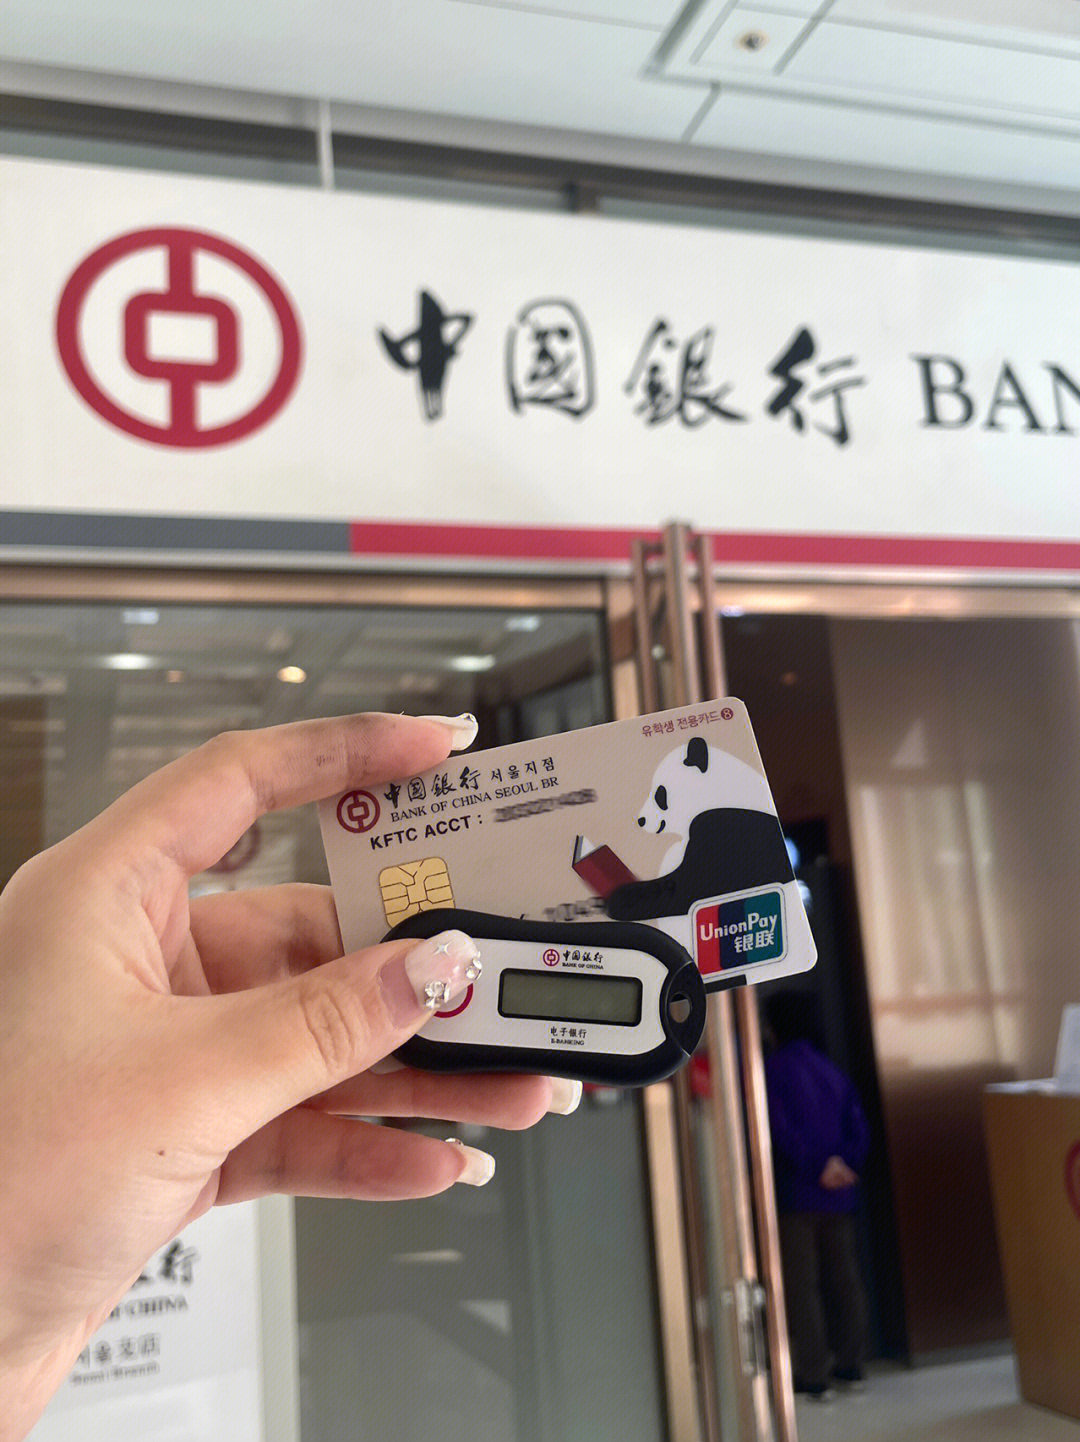 中国银行志愿者证图片